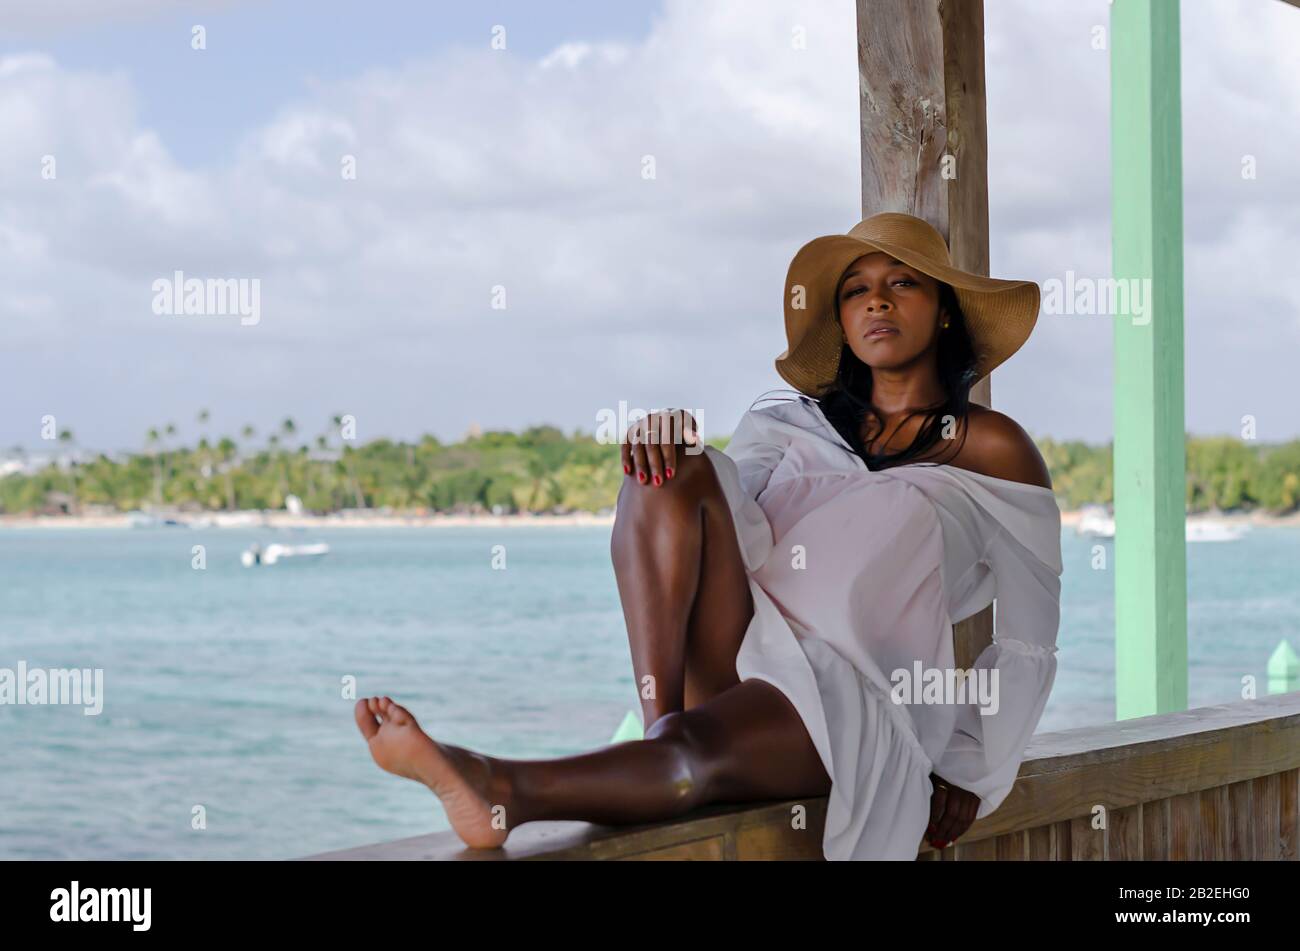 Femme noire de 25 à 30 ans, assise au port, vêtue de modèles blancs, de vêtements frais d'été et tropicaux, avec paysage de plage et ciel ensoleillé Banque D'Images